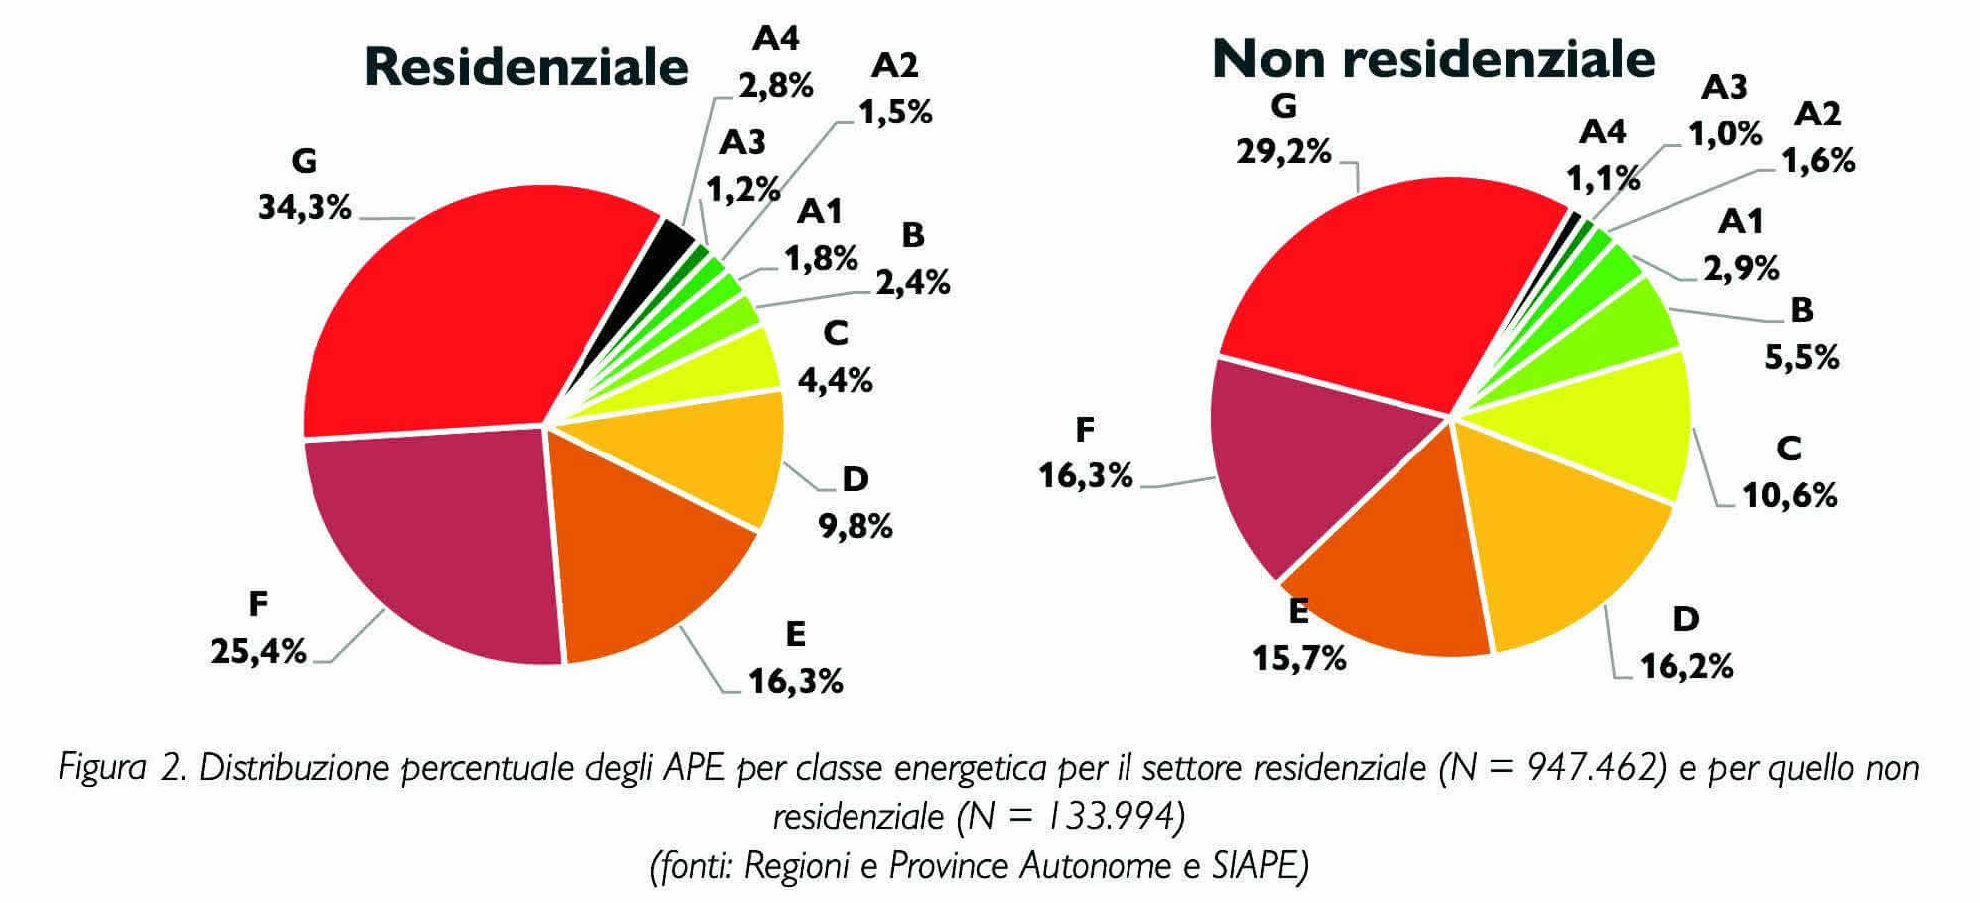 Grafico analisi della dispribuzione degli APE per classe energetica per il settore residenziale e non residenziale.